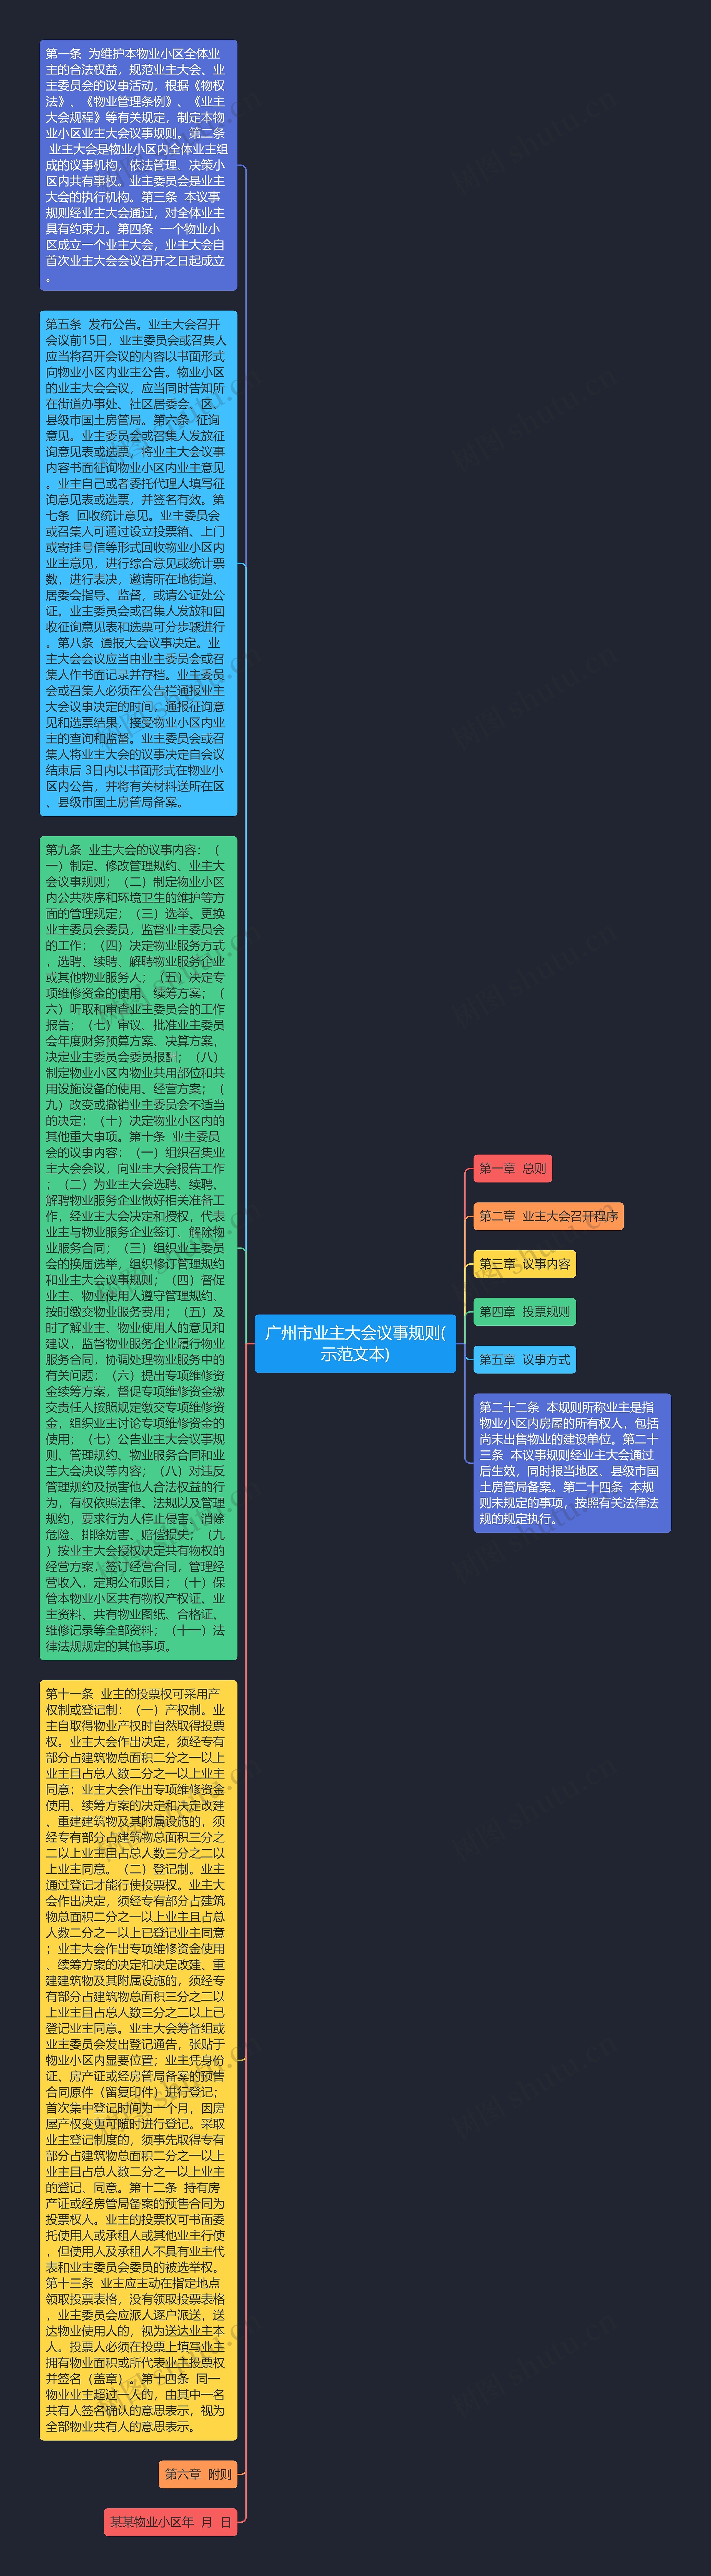 广州市业主大会议事规则(示范文本)思维导图